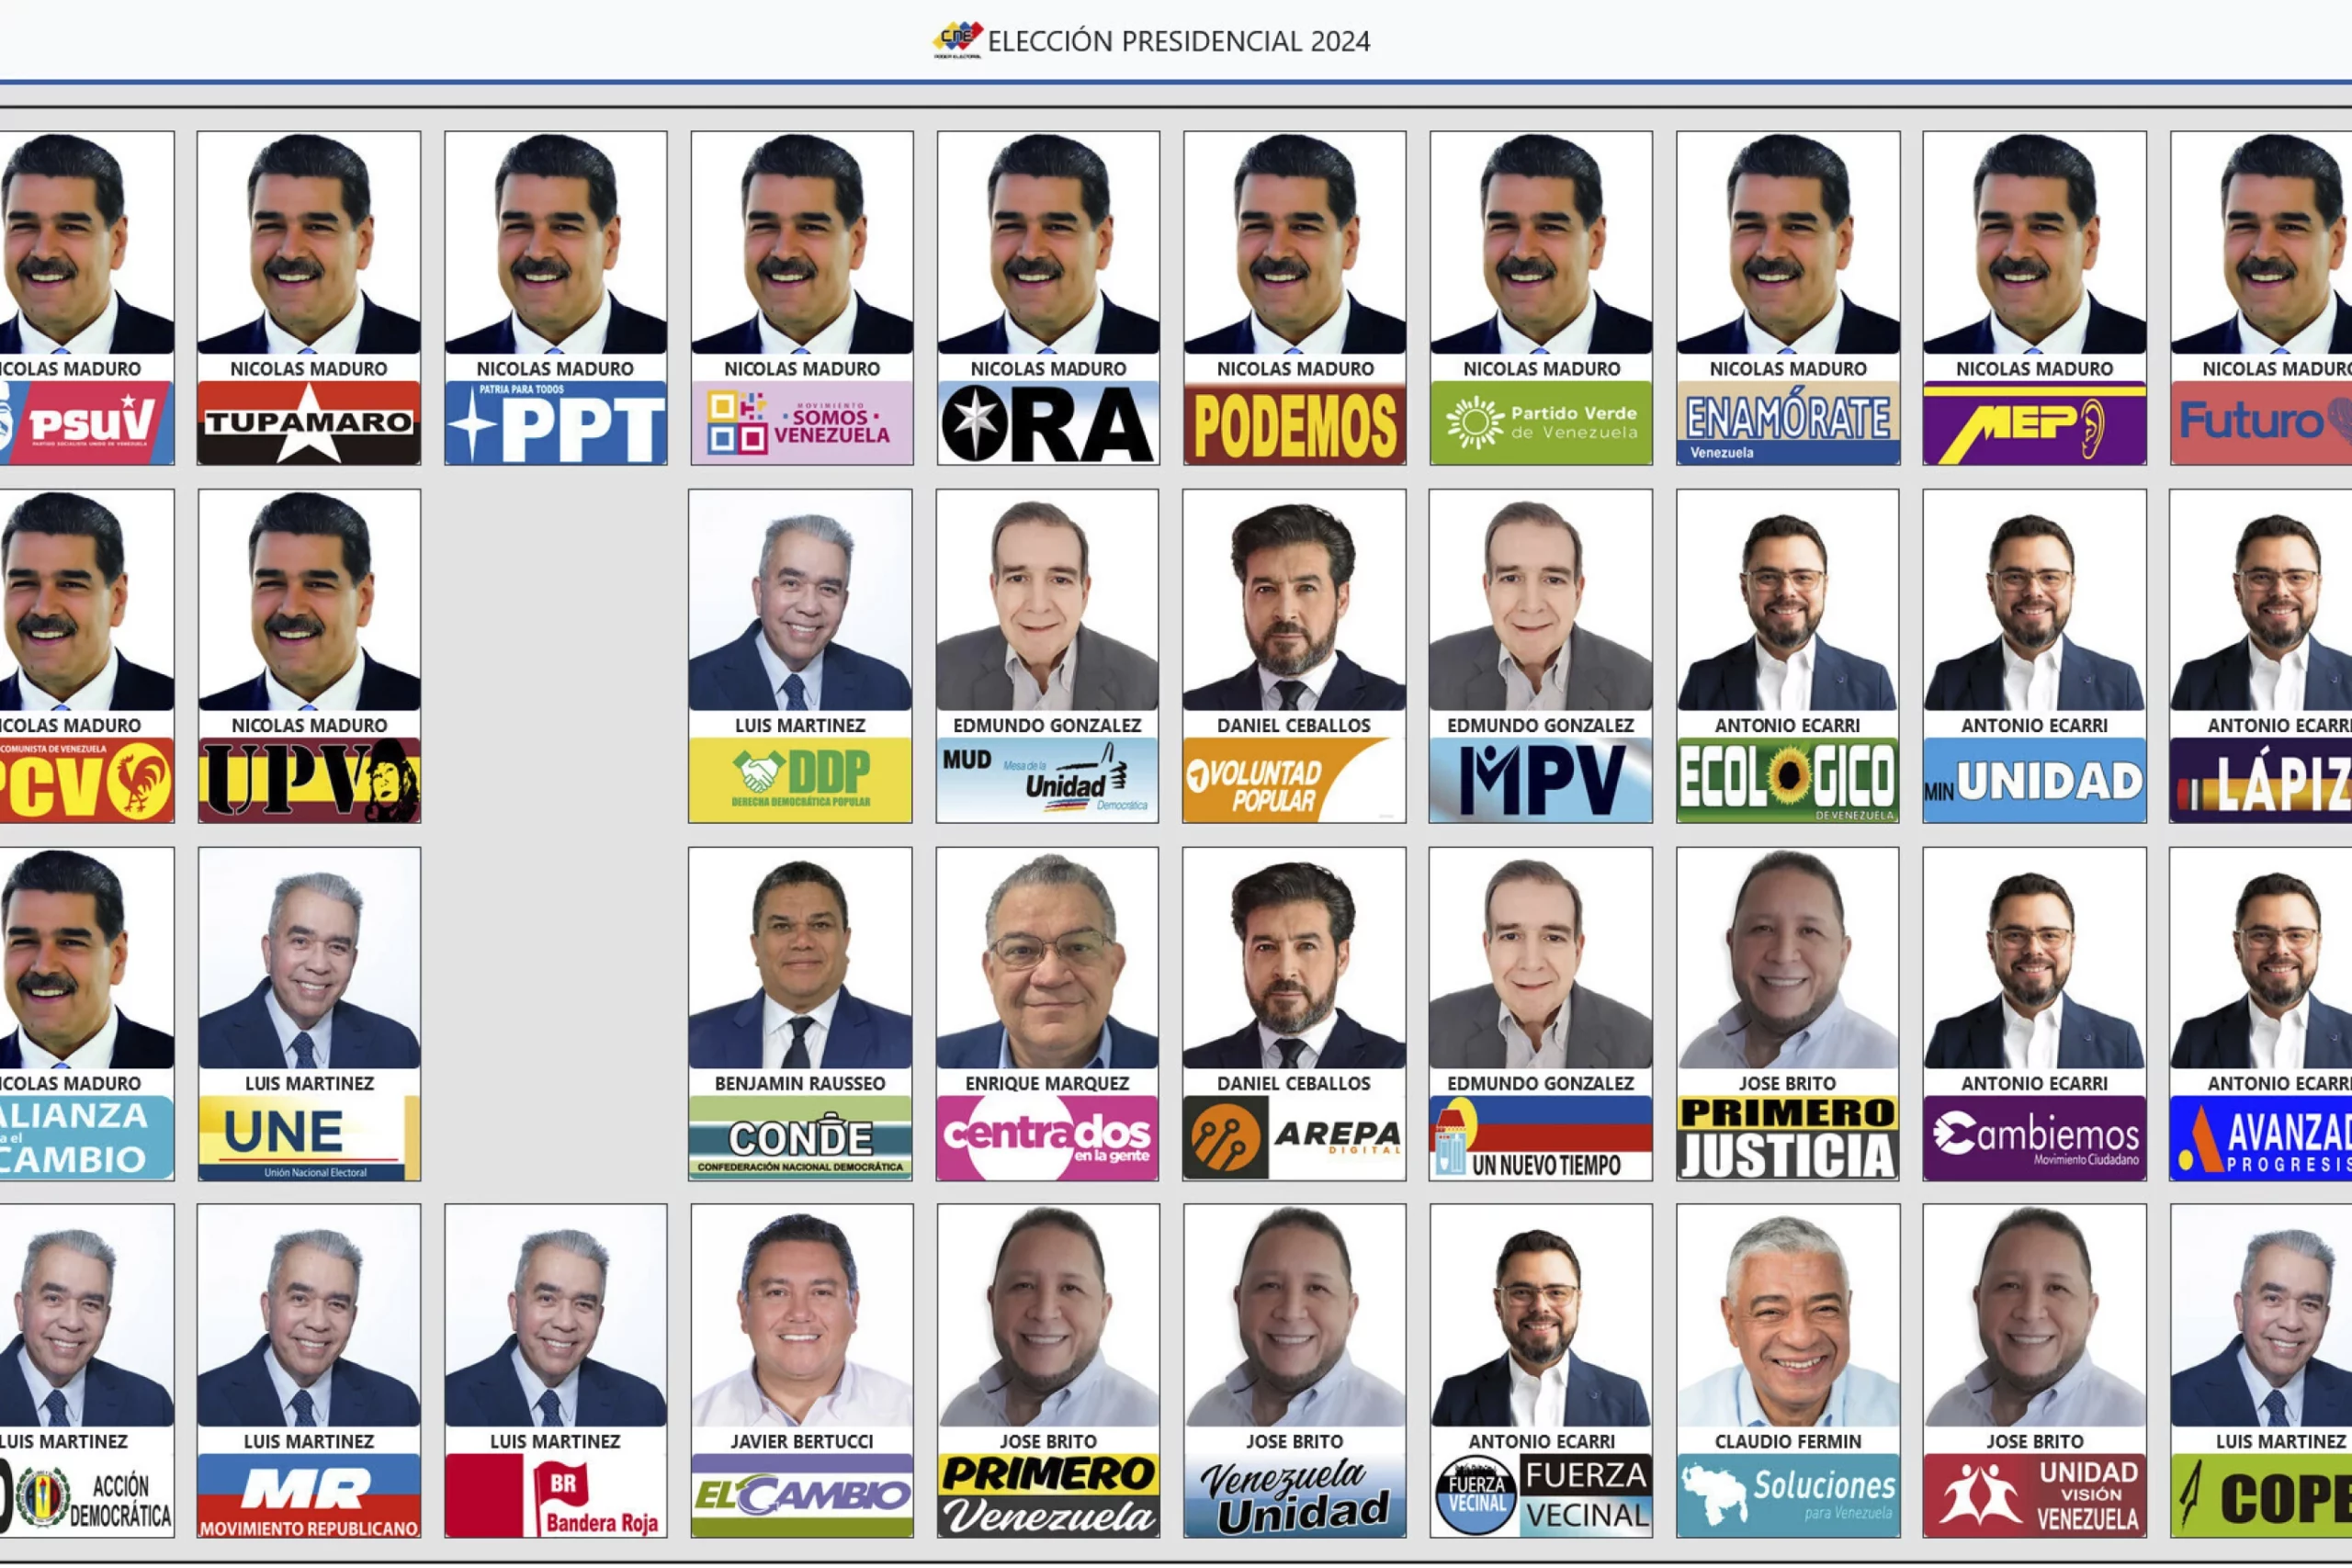 Бюллетень президентских выборов 28 июля 2024 года в Венесуэле